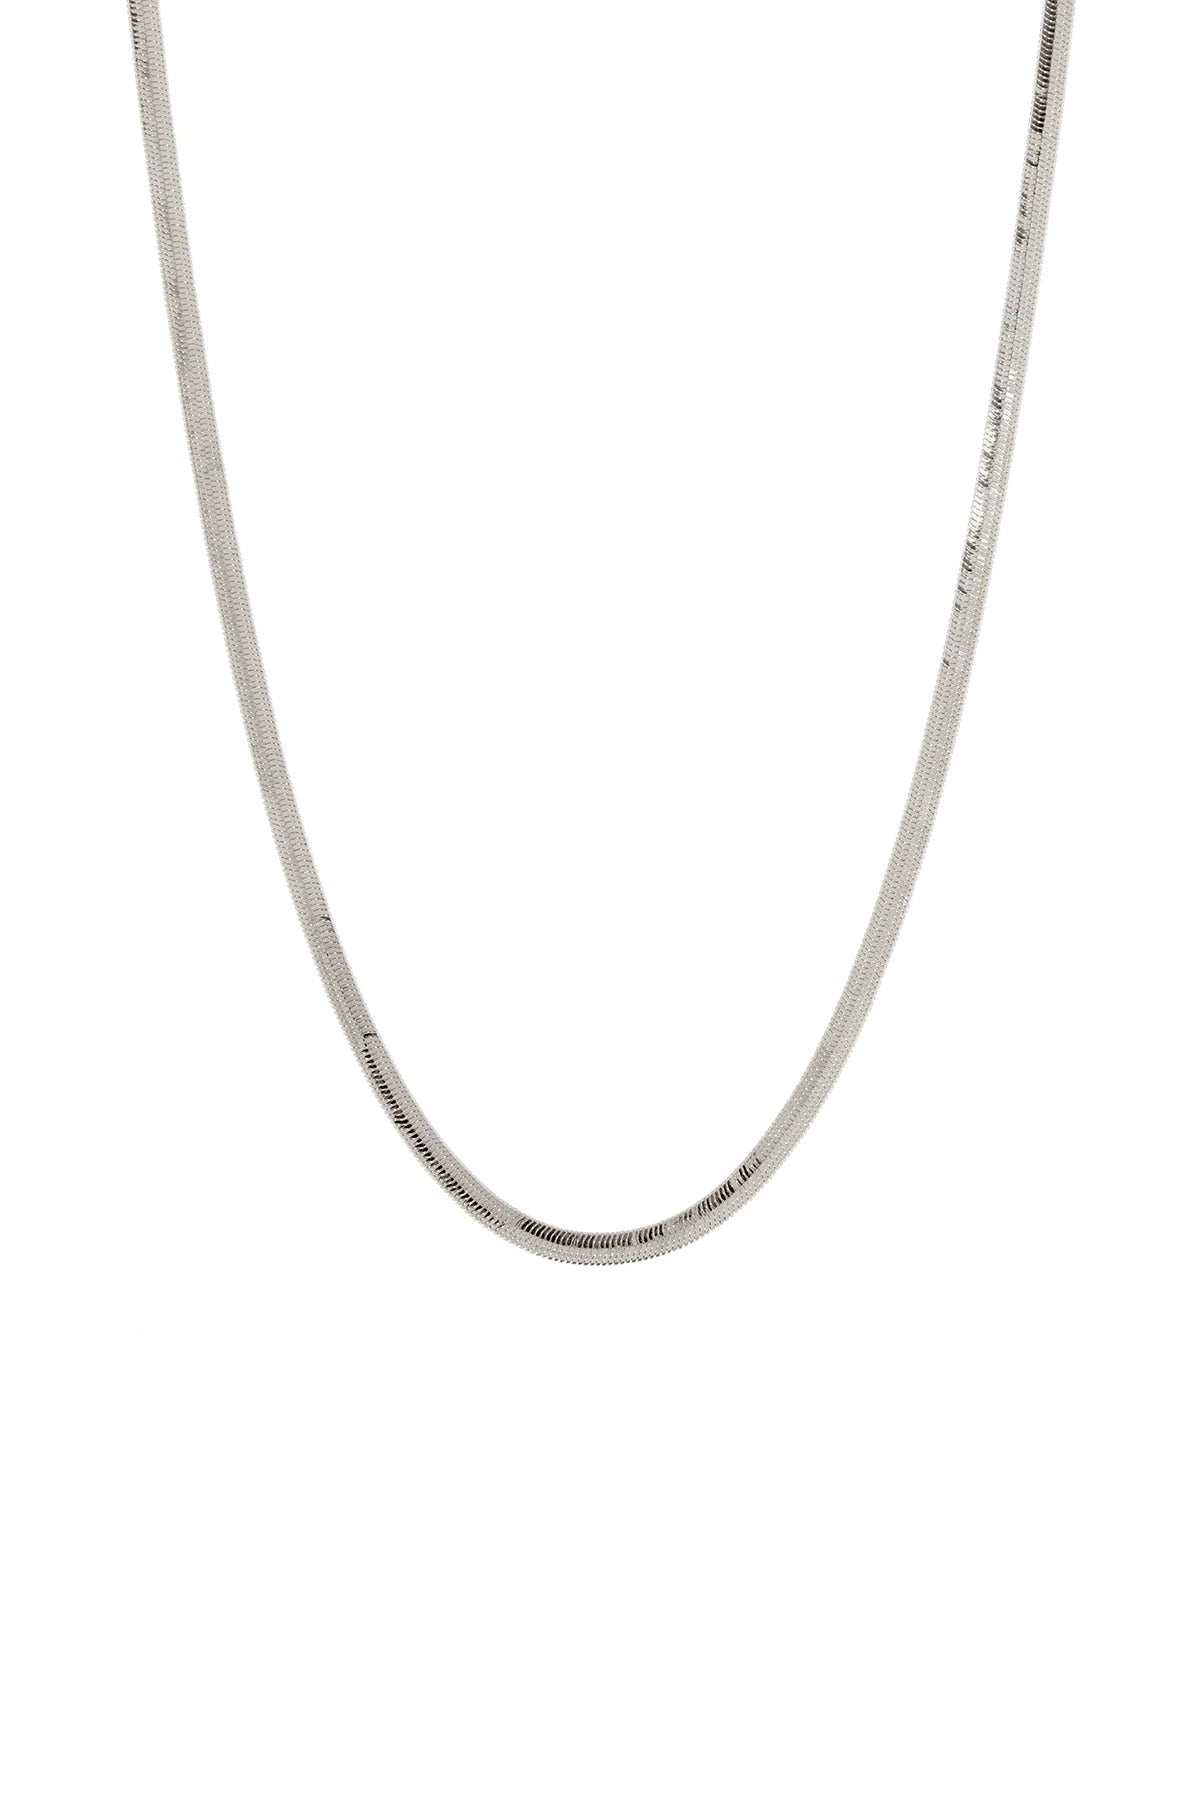 The Classique Herringbone Chain - Silver